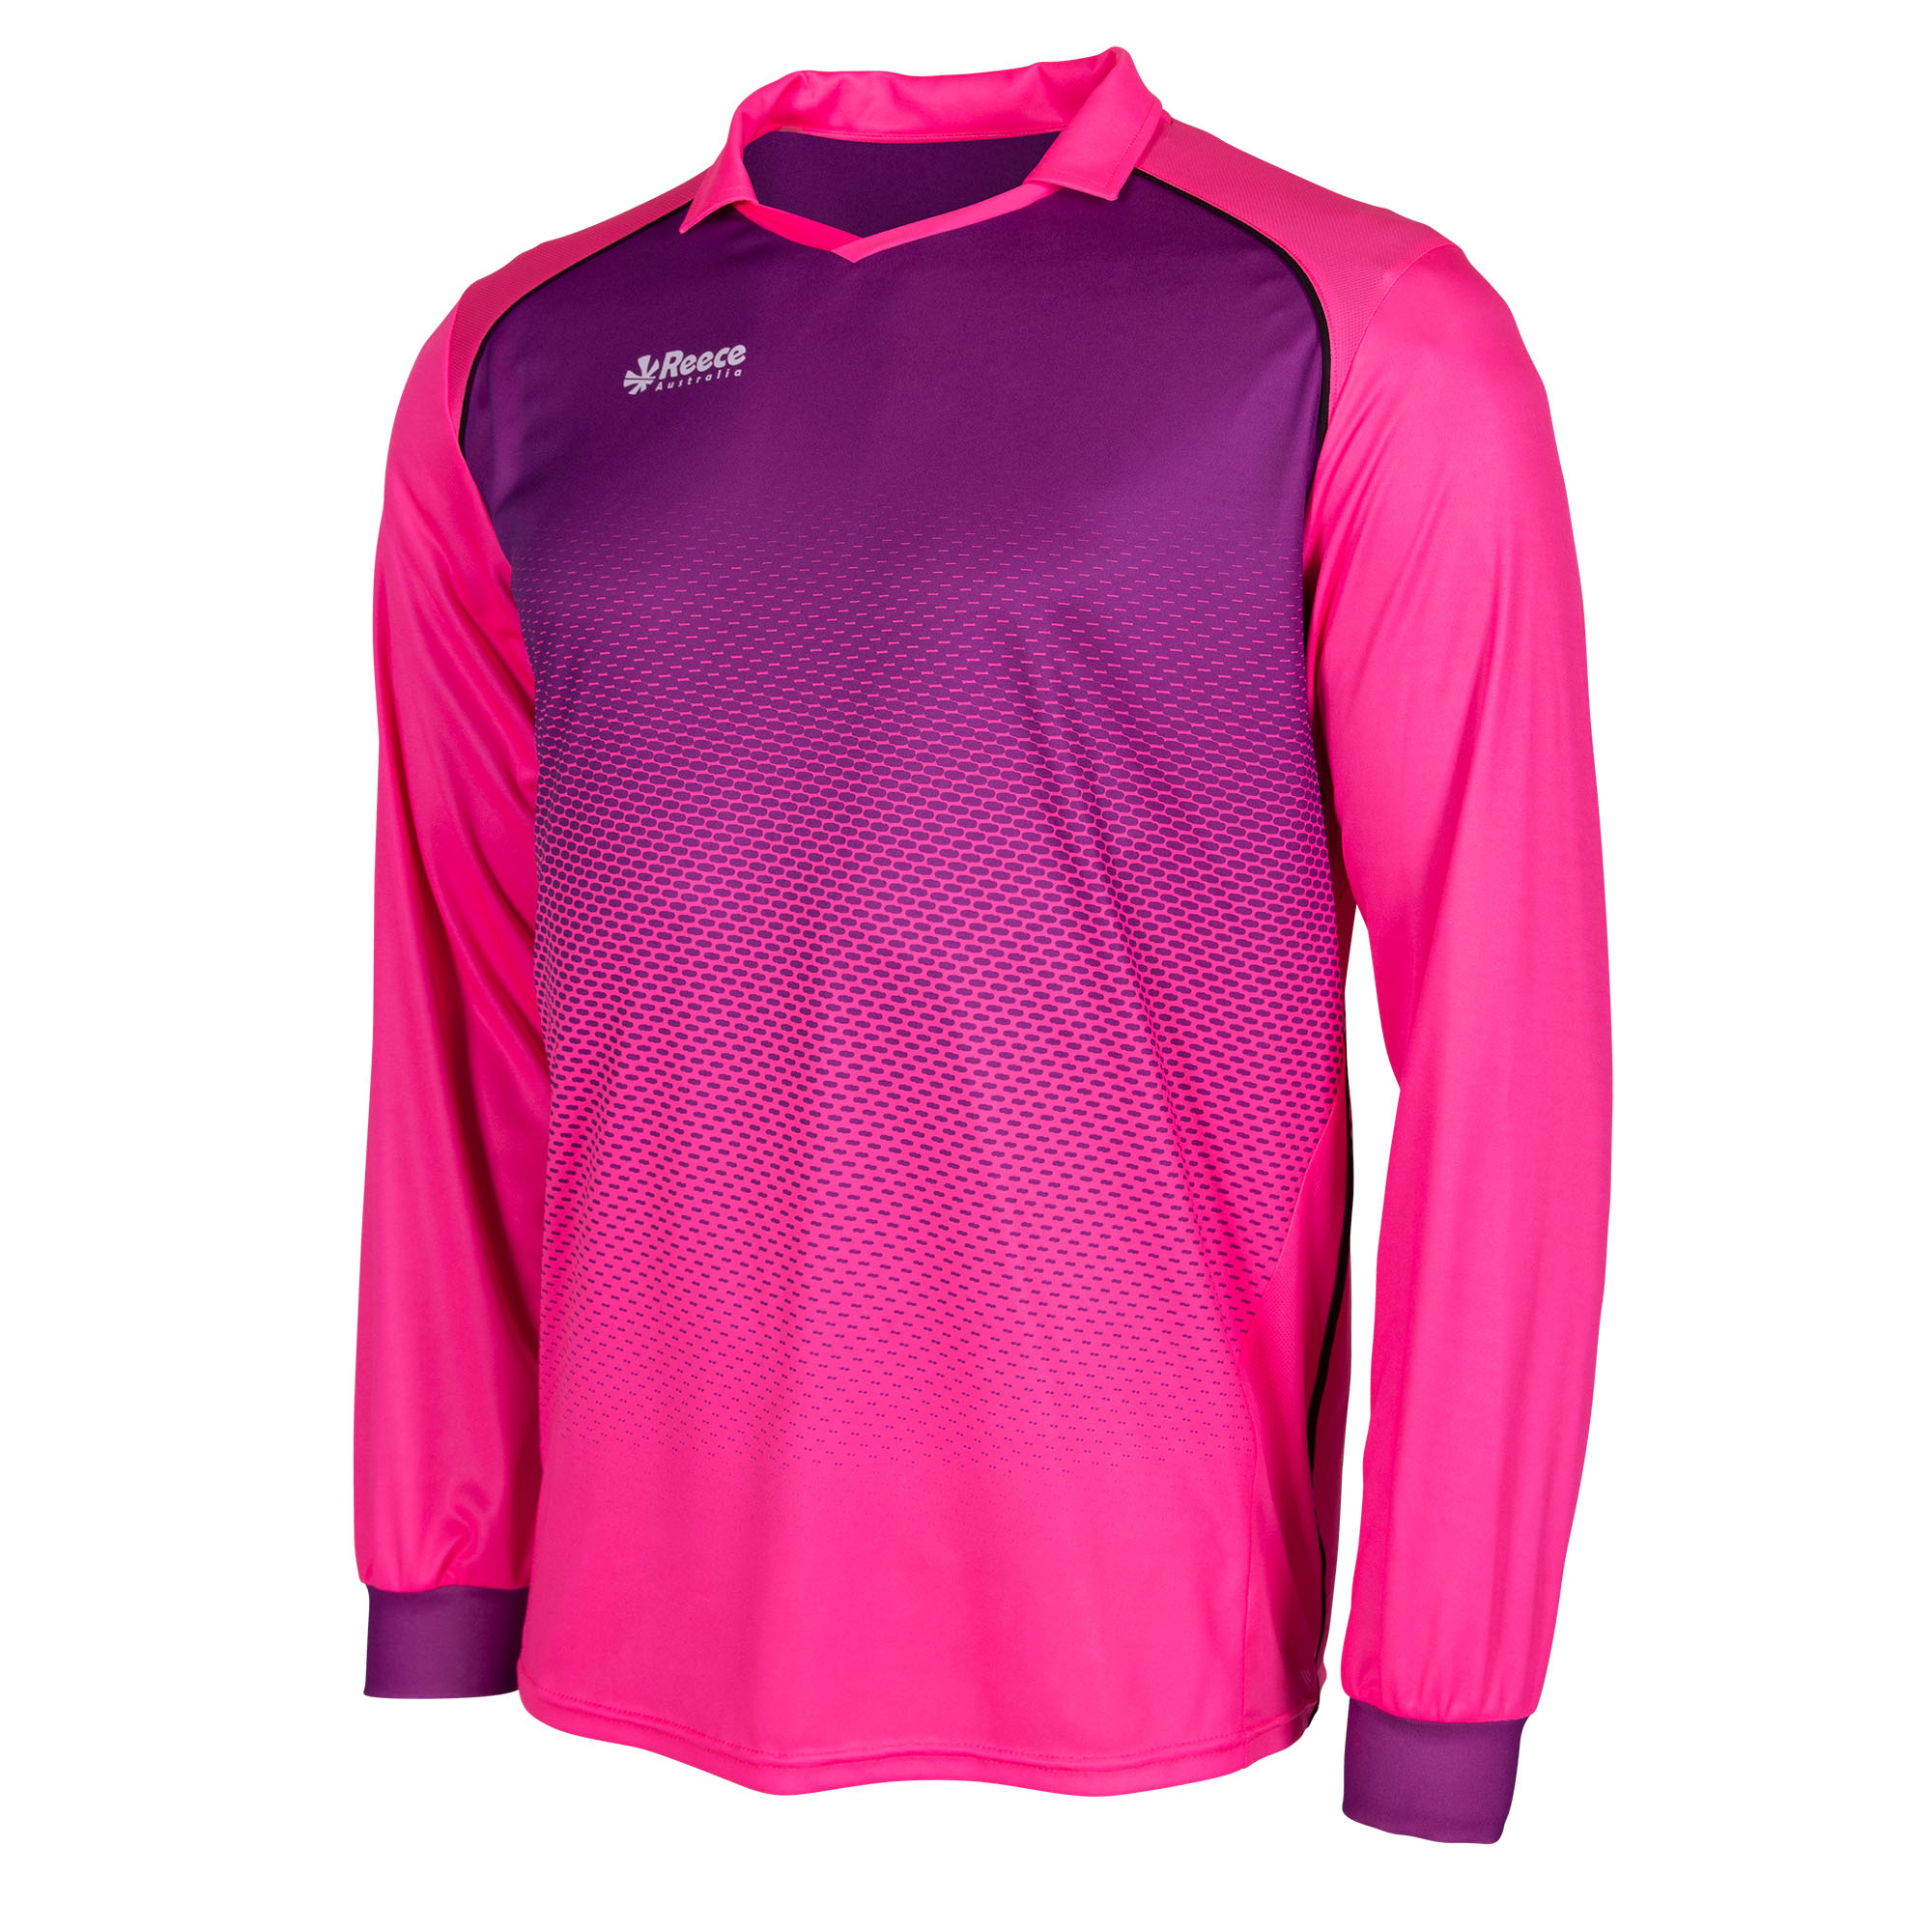 pink goalkeeper jersey